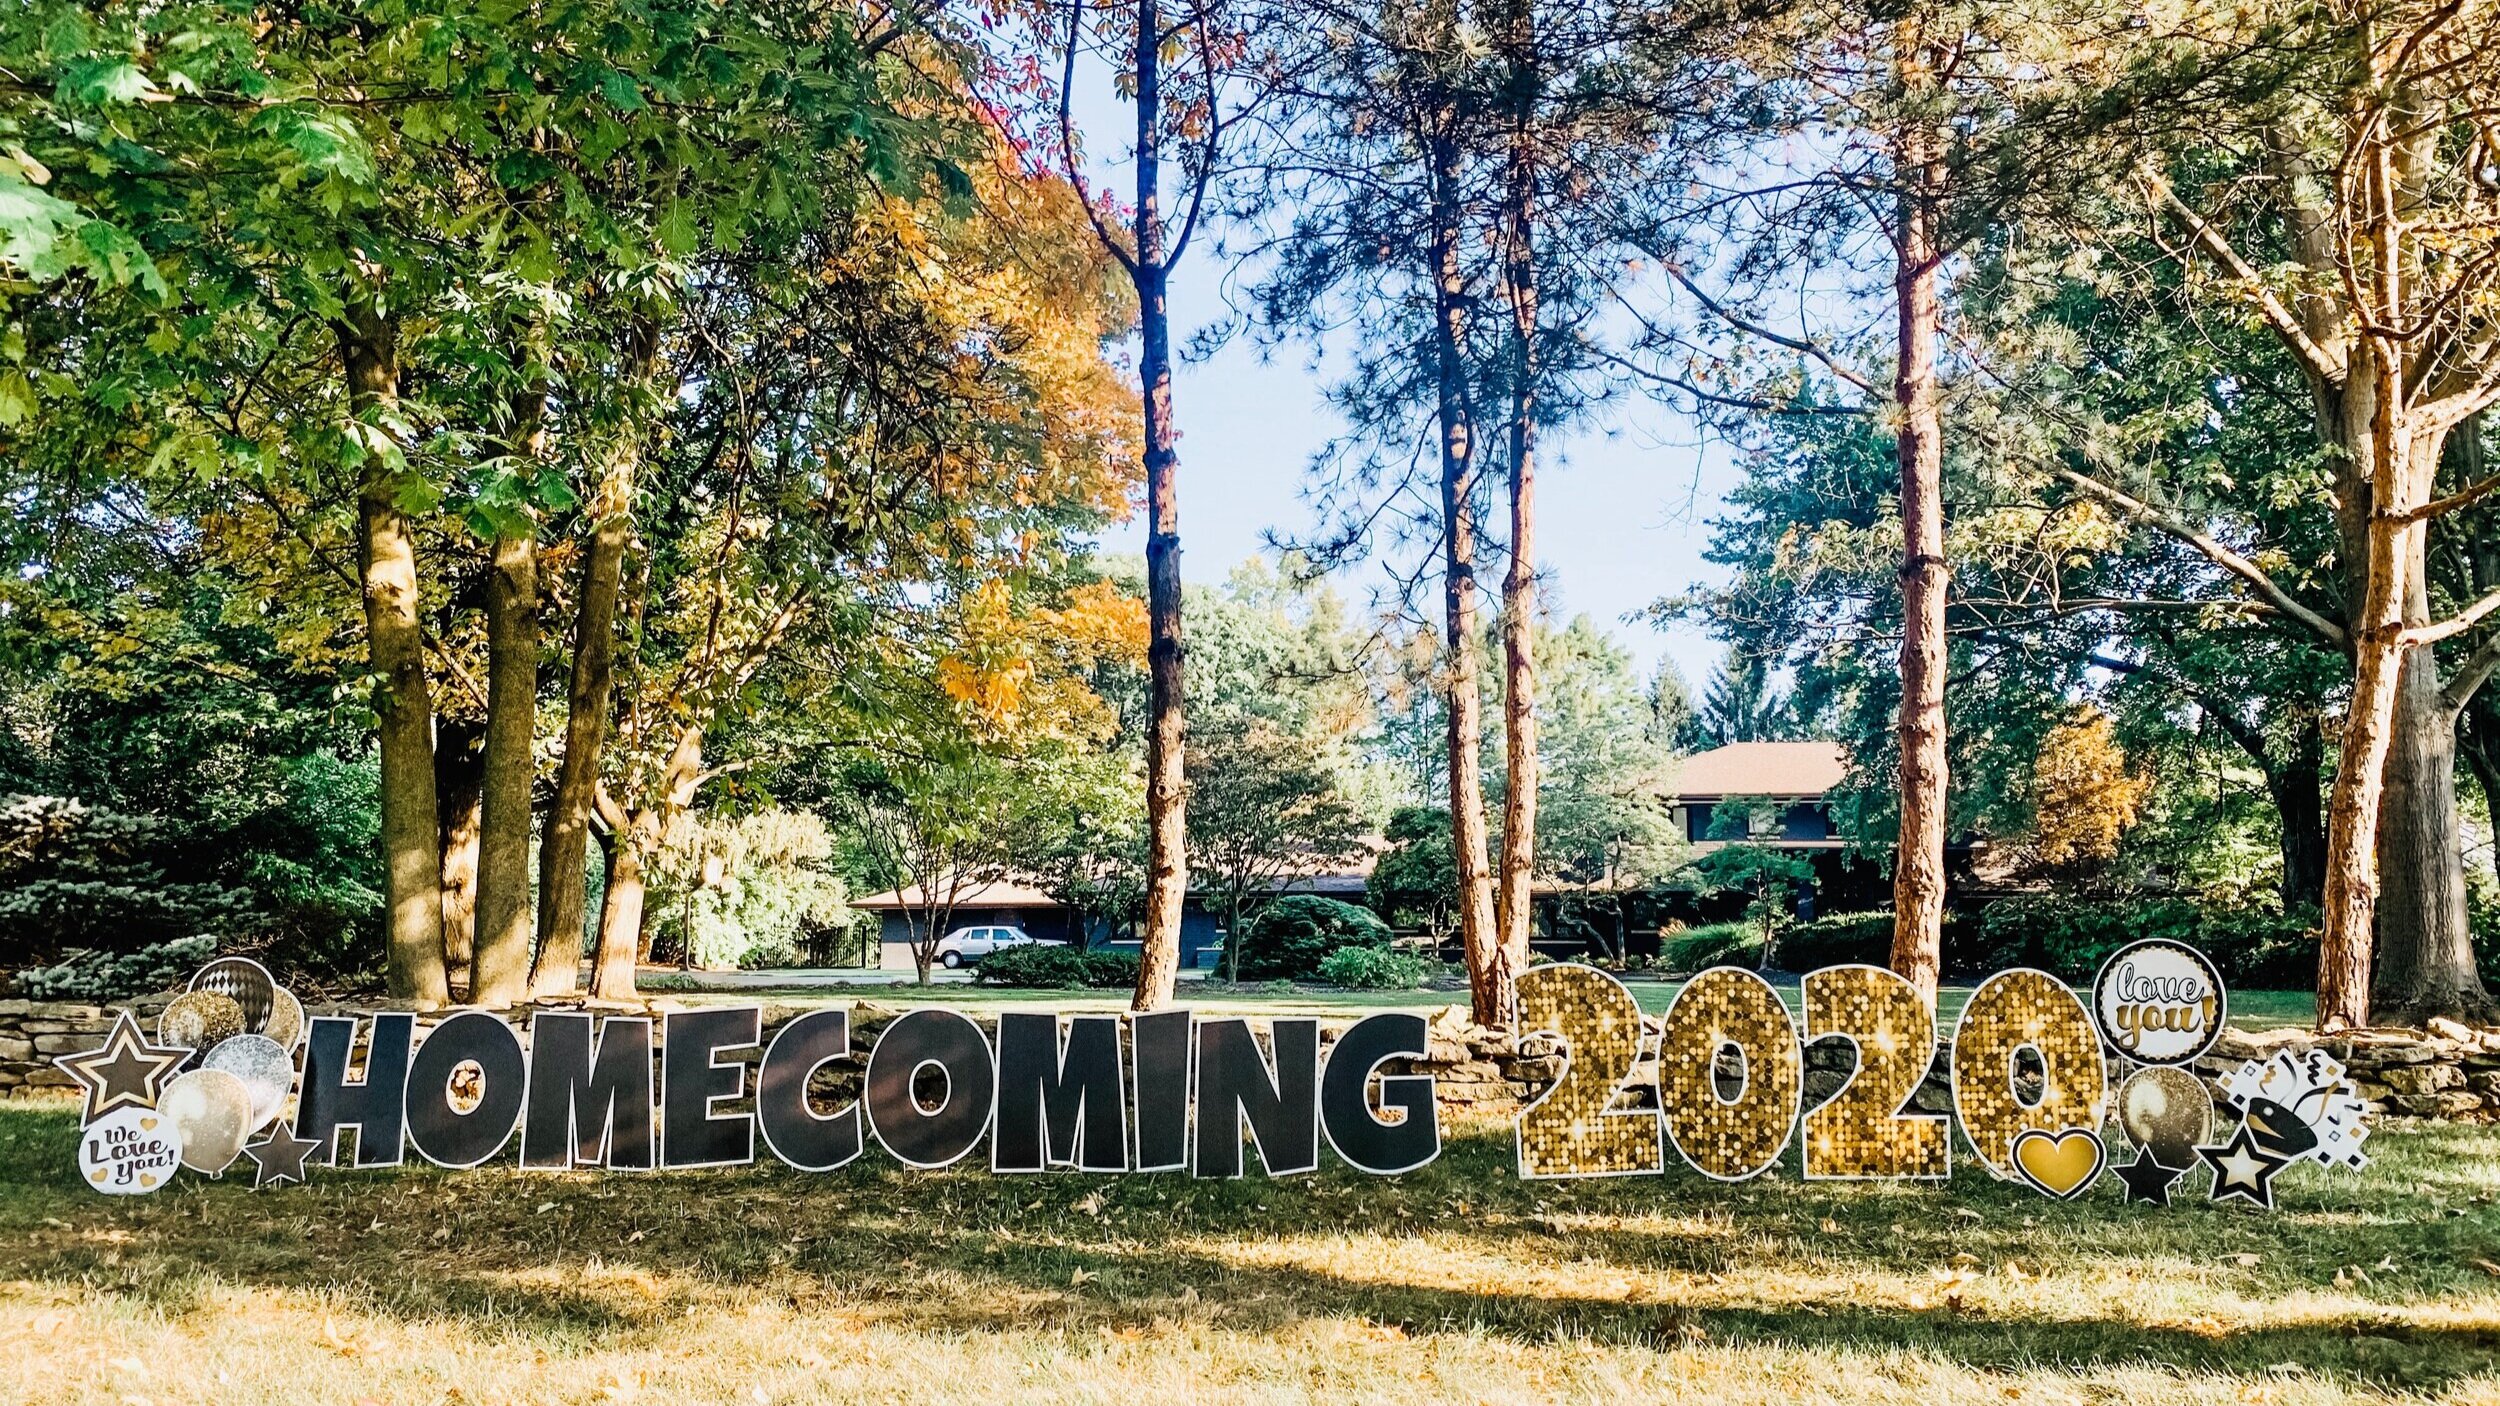 Homecoming Yard Sign